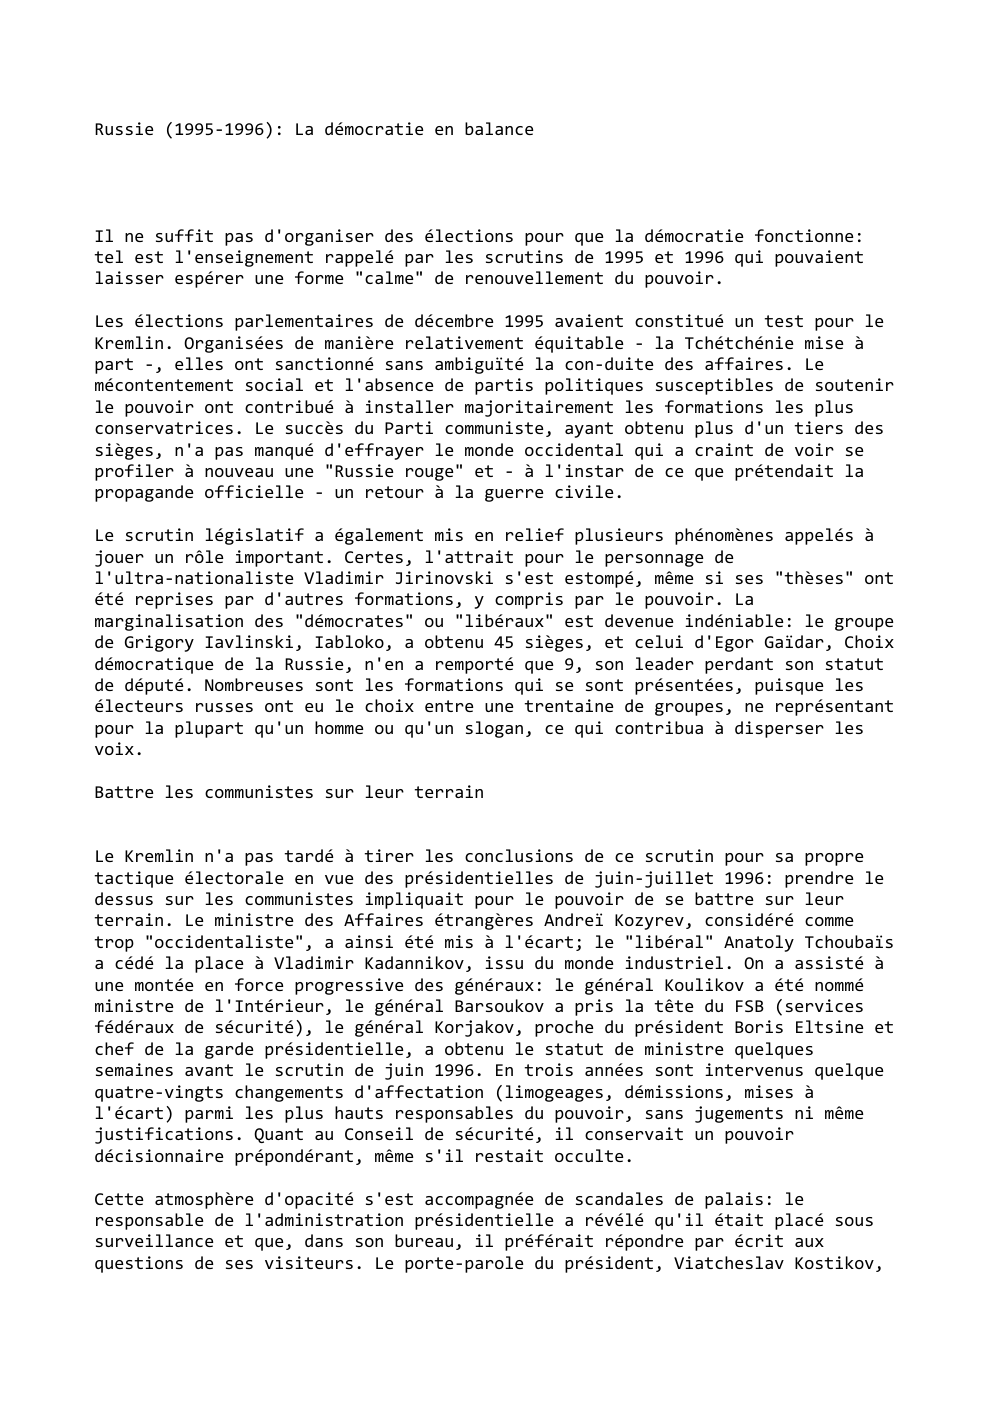 Prévisualisation du document Russie (1995-1996): La démocratie en balance

Il ne suffit pas d'organiser des élections pour que la démocratie fonctionne:
tel est...